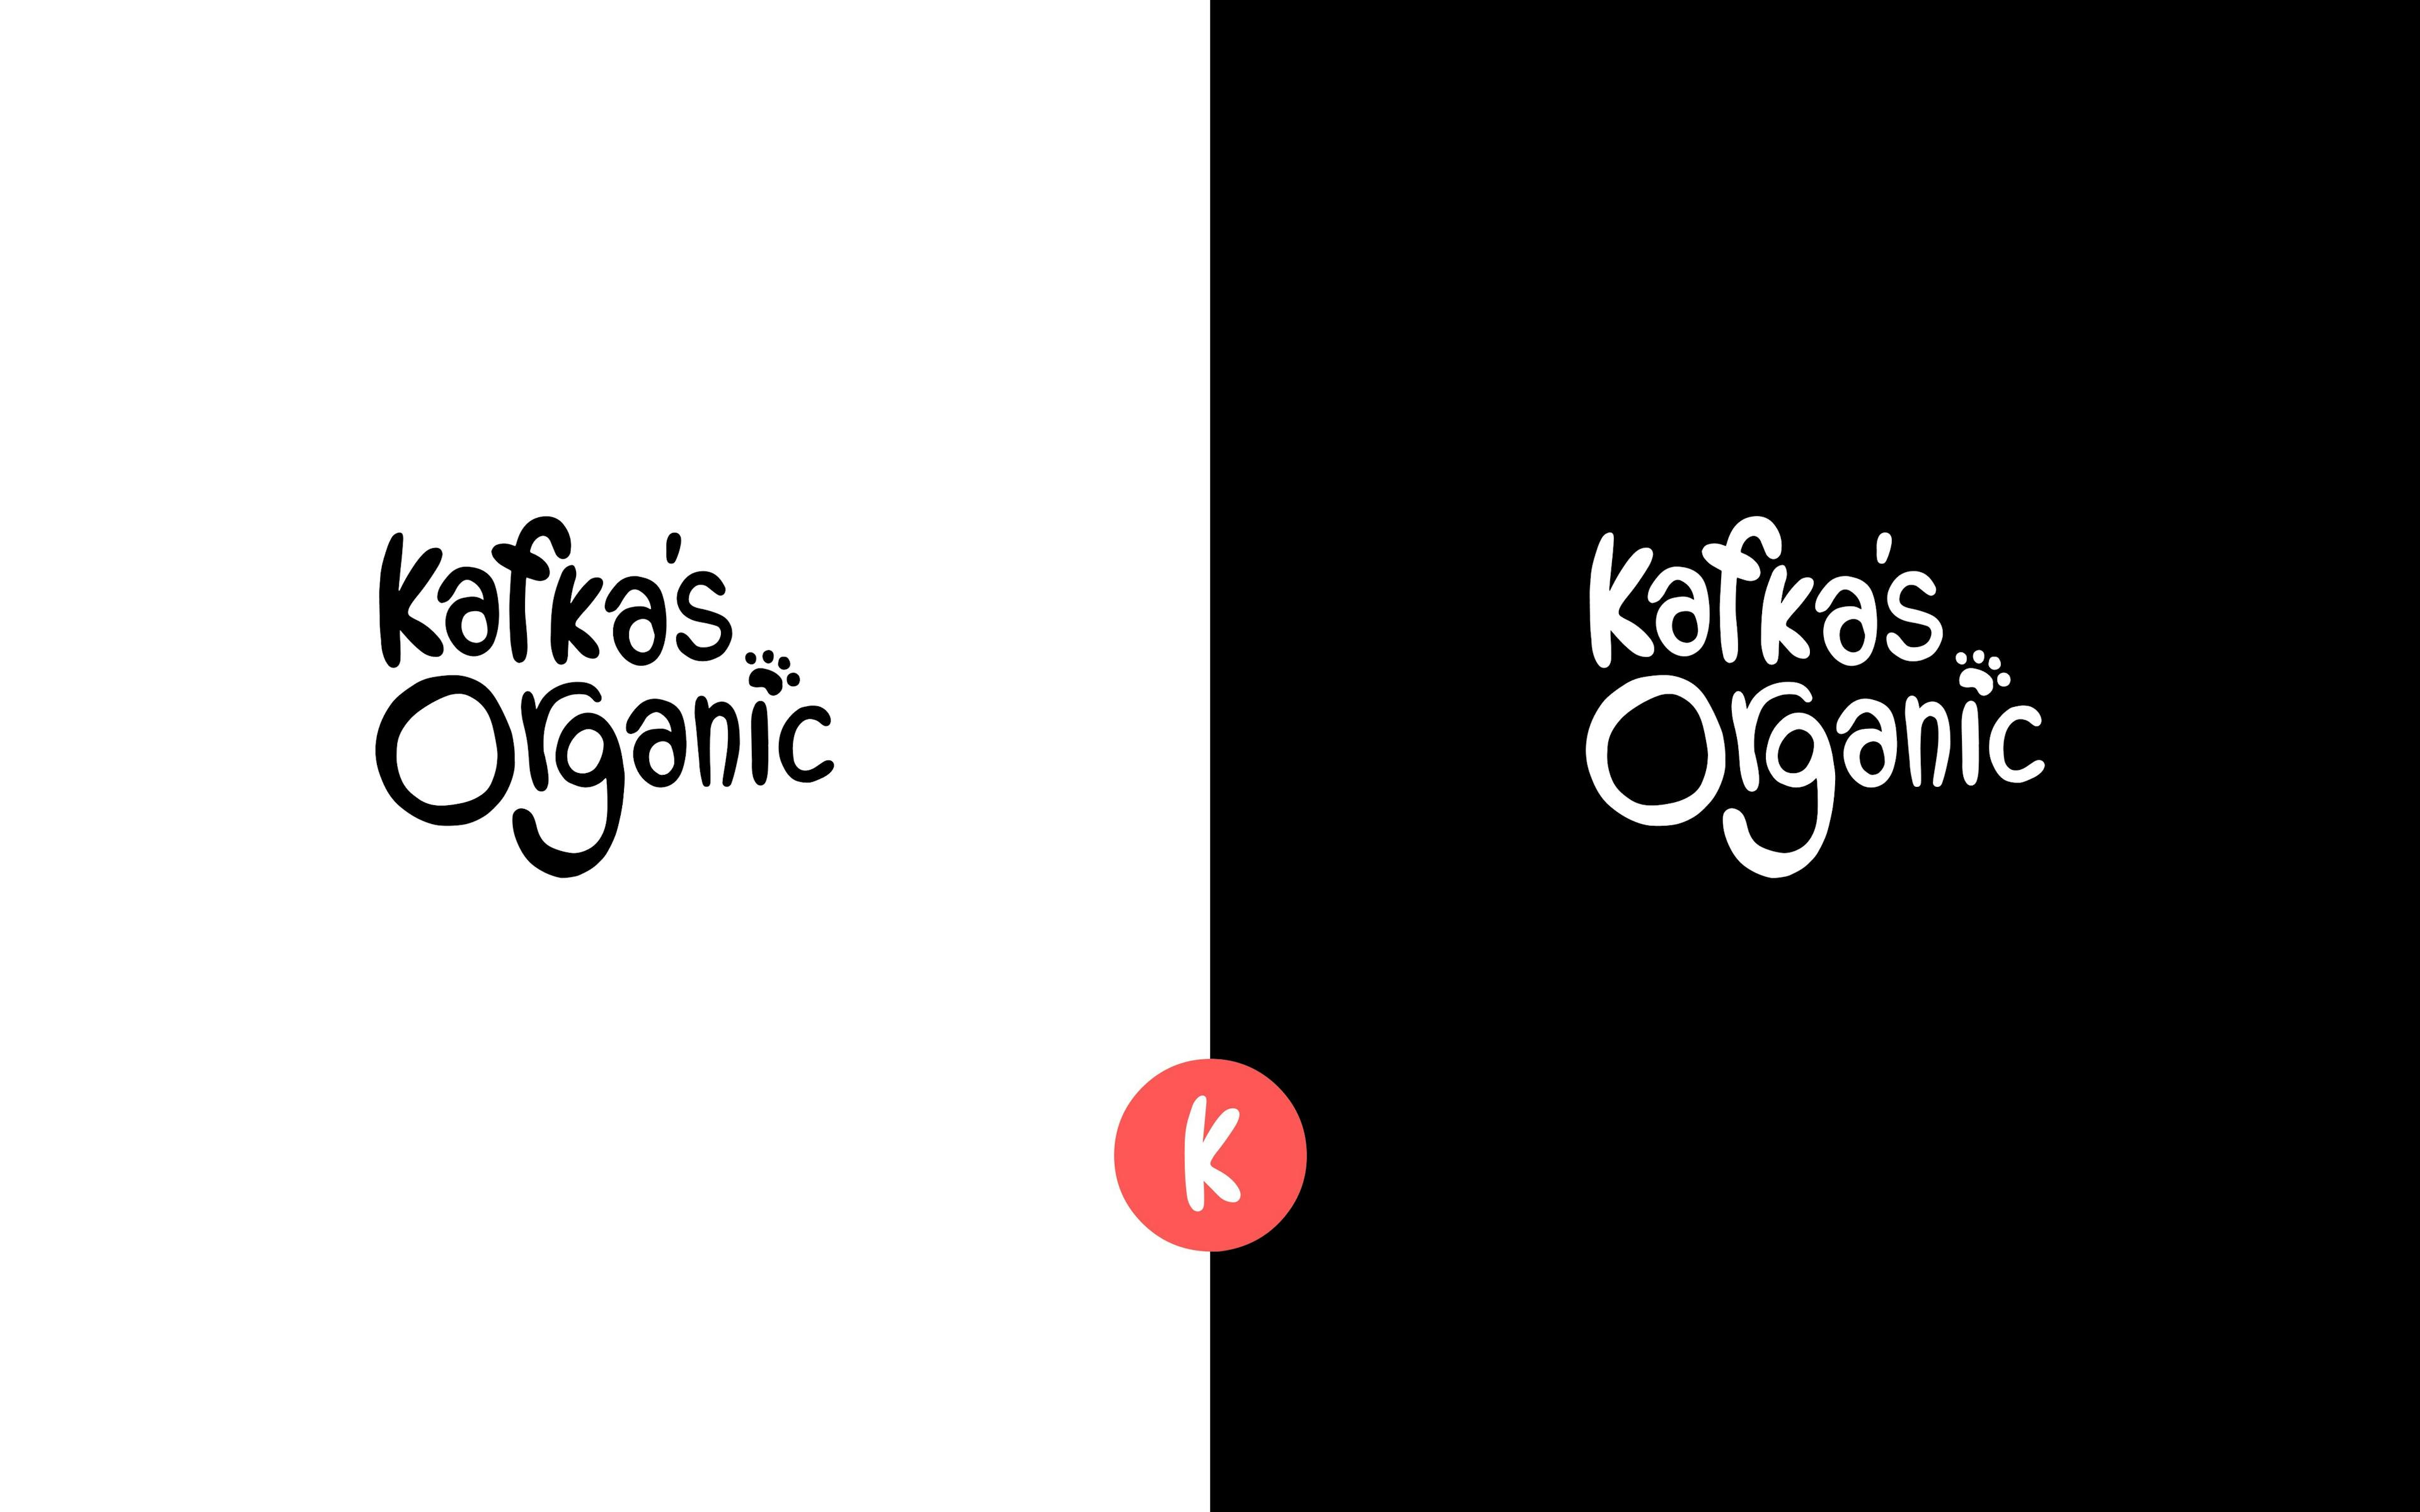 Kafka's Organic's logo design